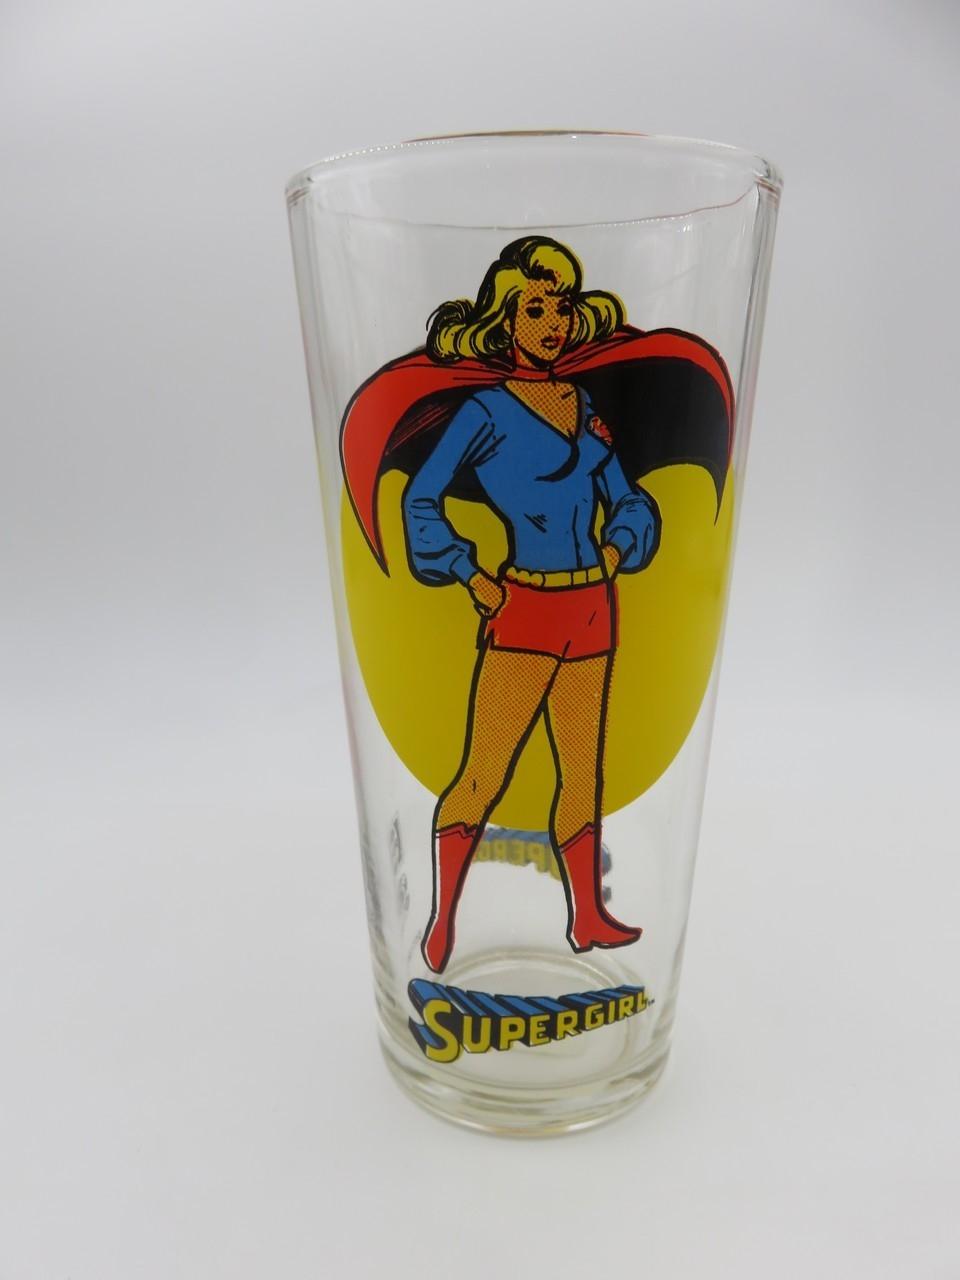 Supergirl 1976 Pepsi Super Series Glass/Tumbler